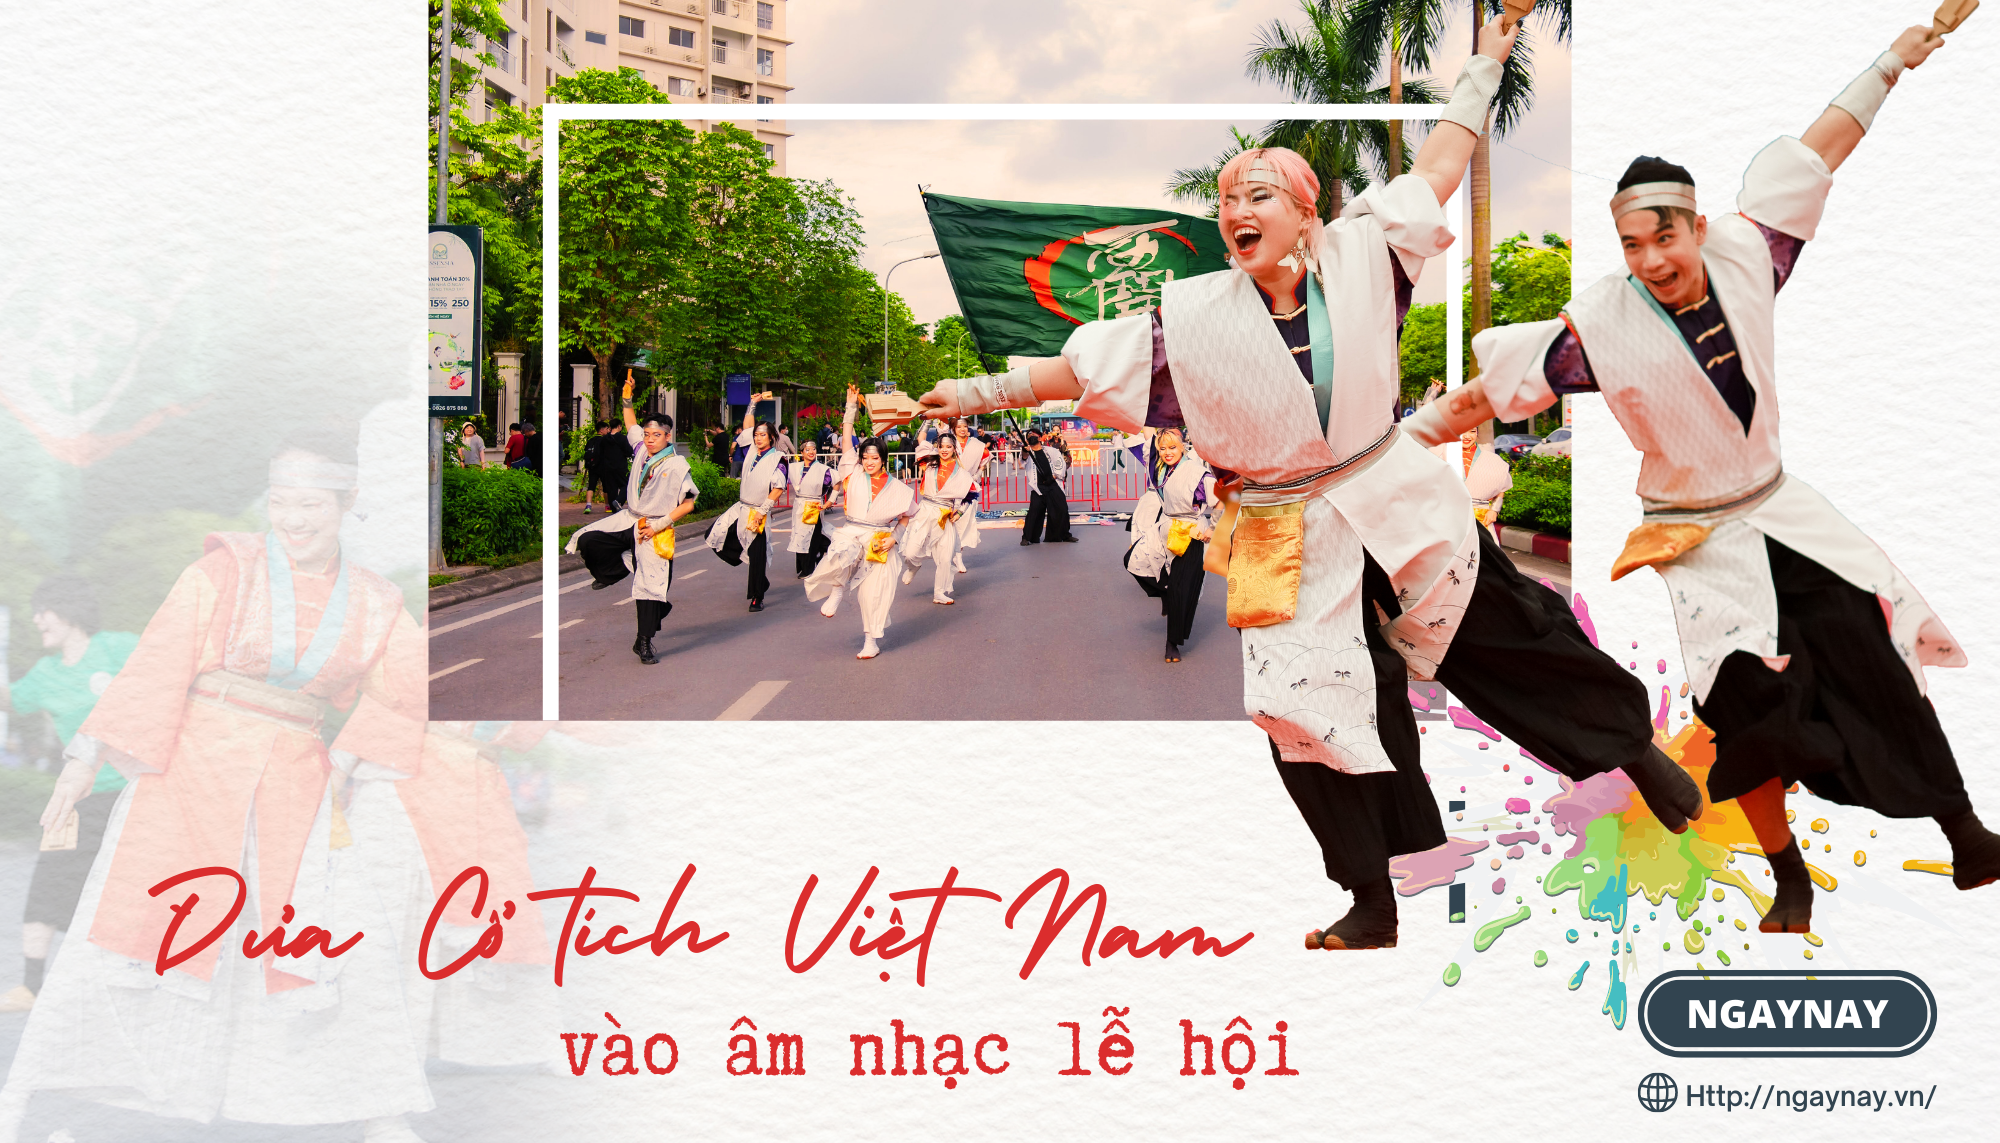 Đưa cổ tích Việt Nam vào âm nhạc lễ hội